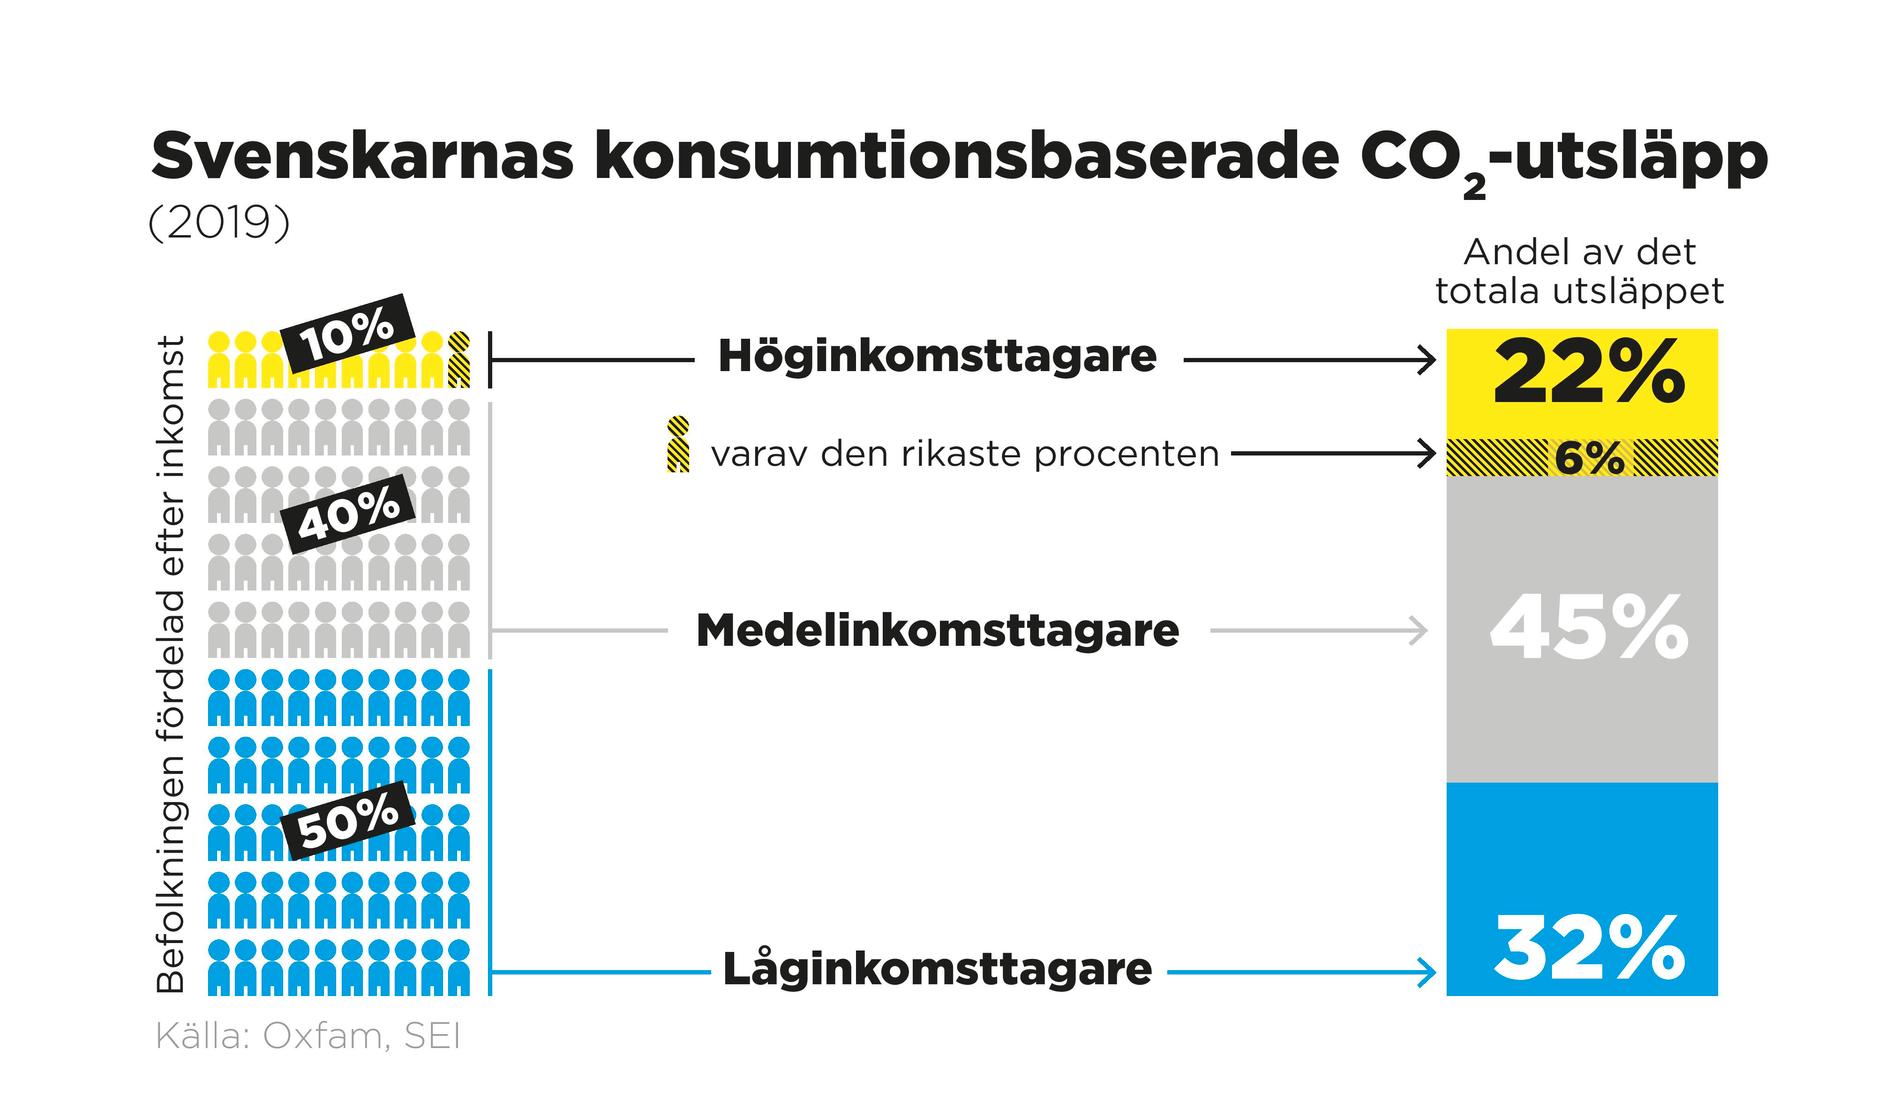 Svenskarnas konsumtionsbaserade koldioxidutsläpp 2019.